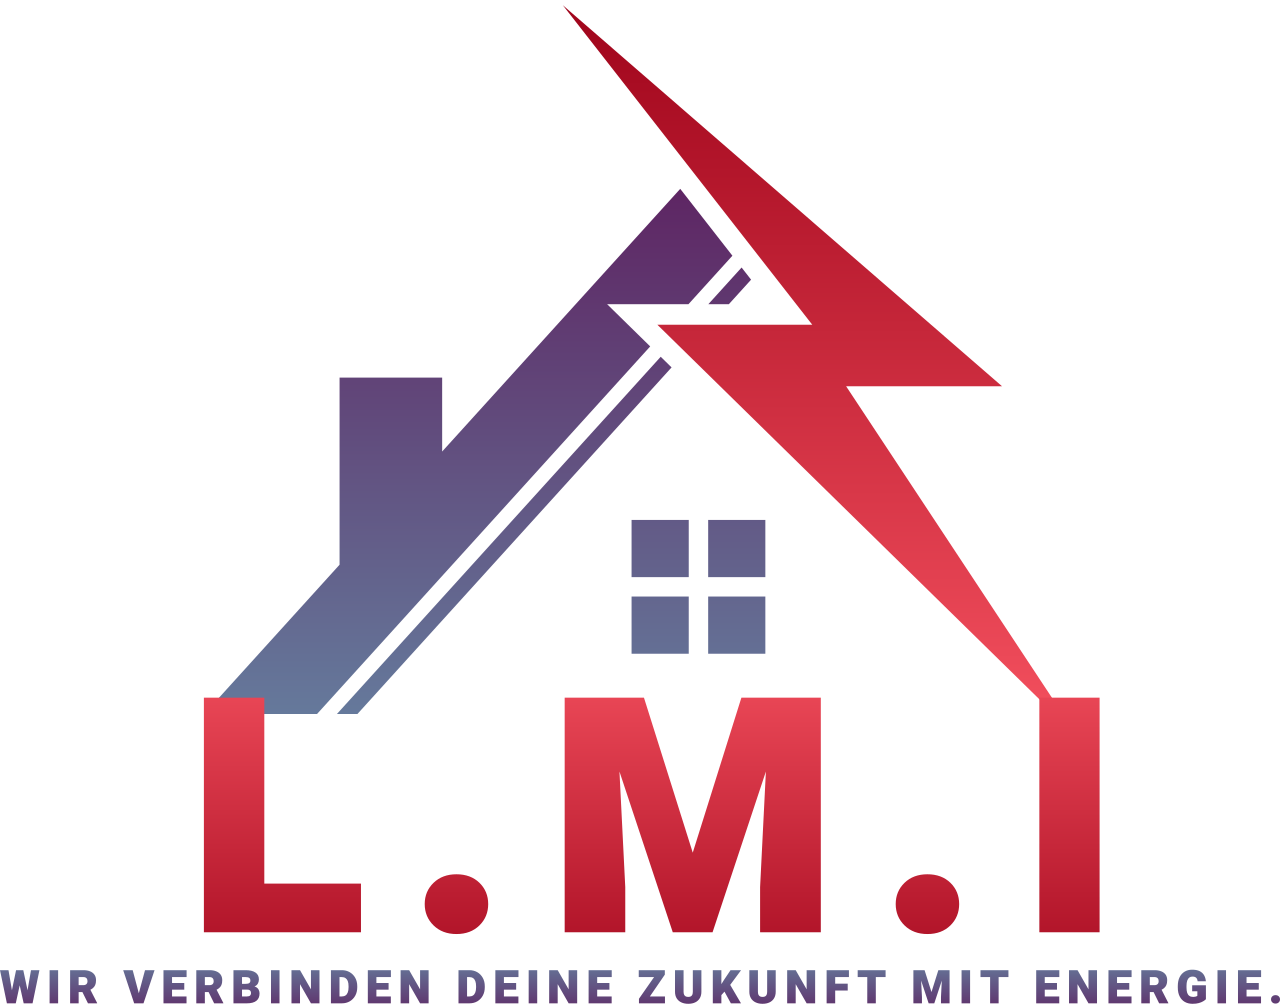 L.M.I's web page